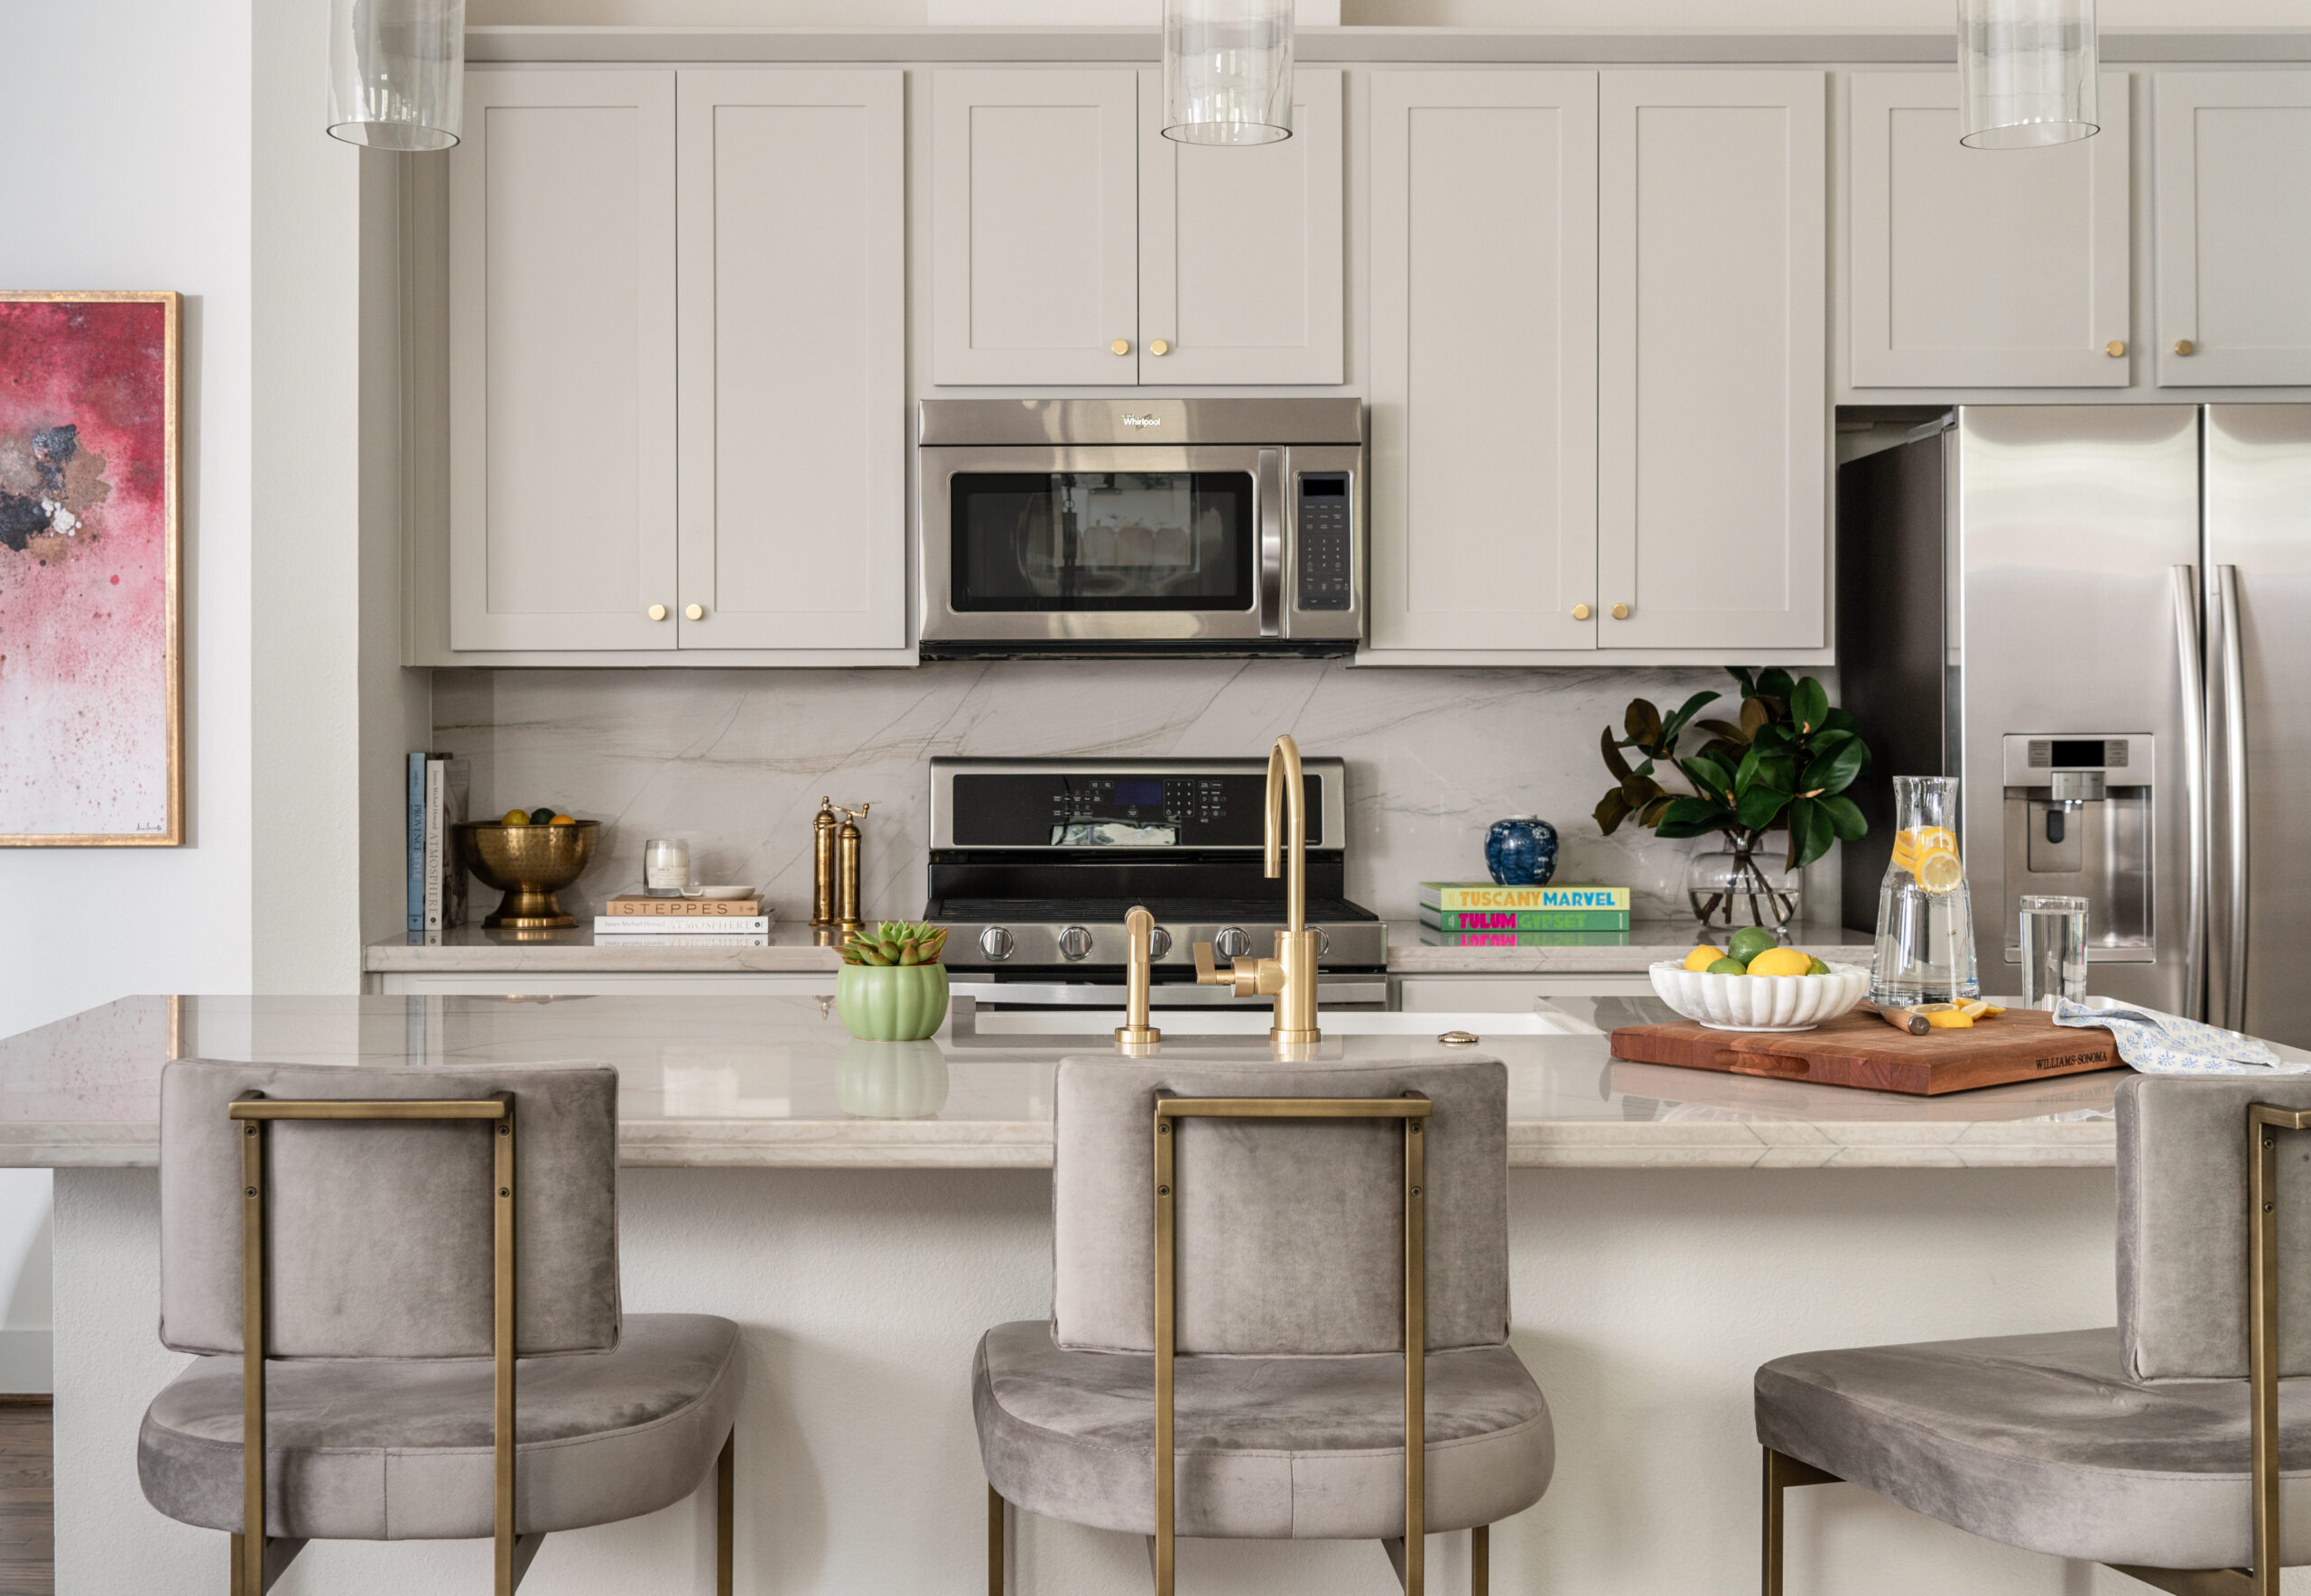 Kitchen interior design with neutral tones